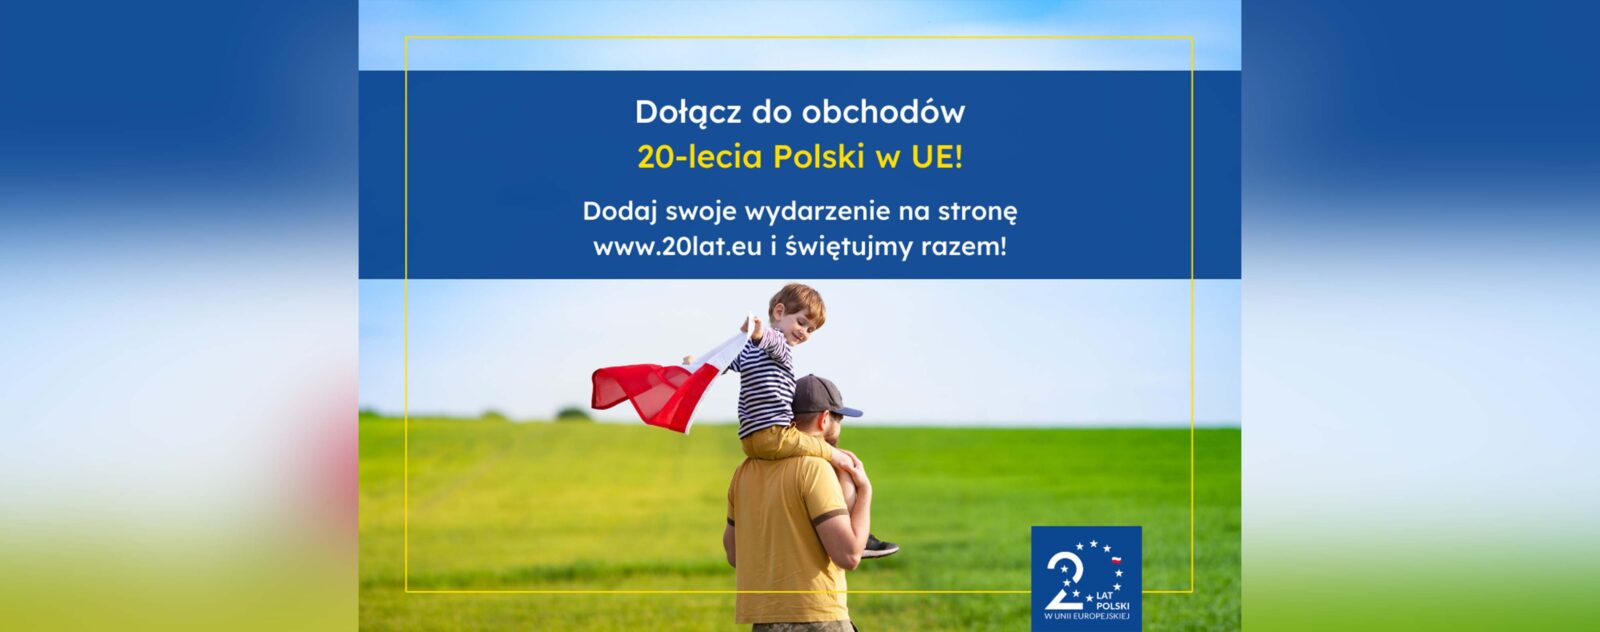 grafika przedstawia napis: Dołącz do obchodów 20-lecia Polski w UE! Dodaj swoje wydarzenie na stronę www.20lat.eu i świętujmy razem. Na grafice widać chłopca siedzącego na ramionach taty trzymającego flagę Polski biało-czerwoną.